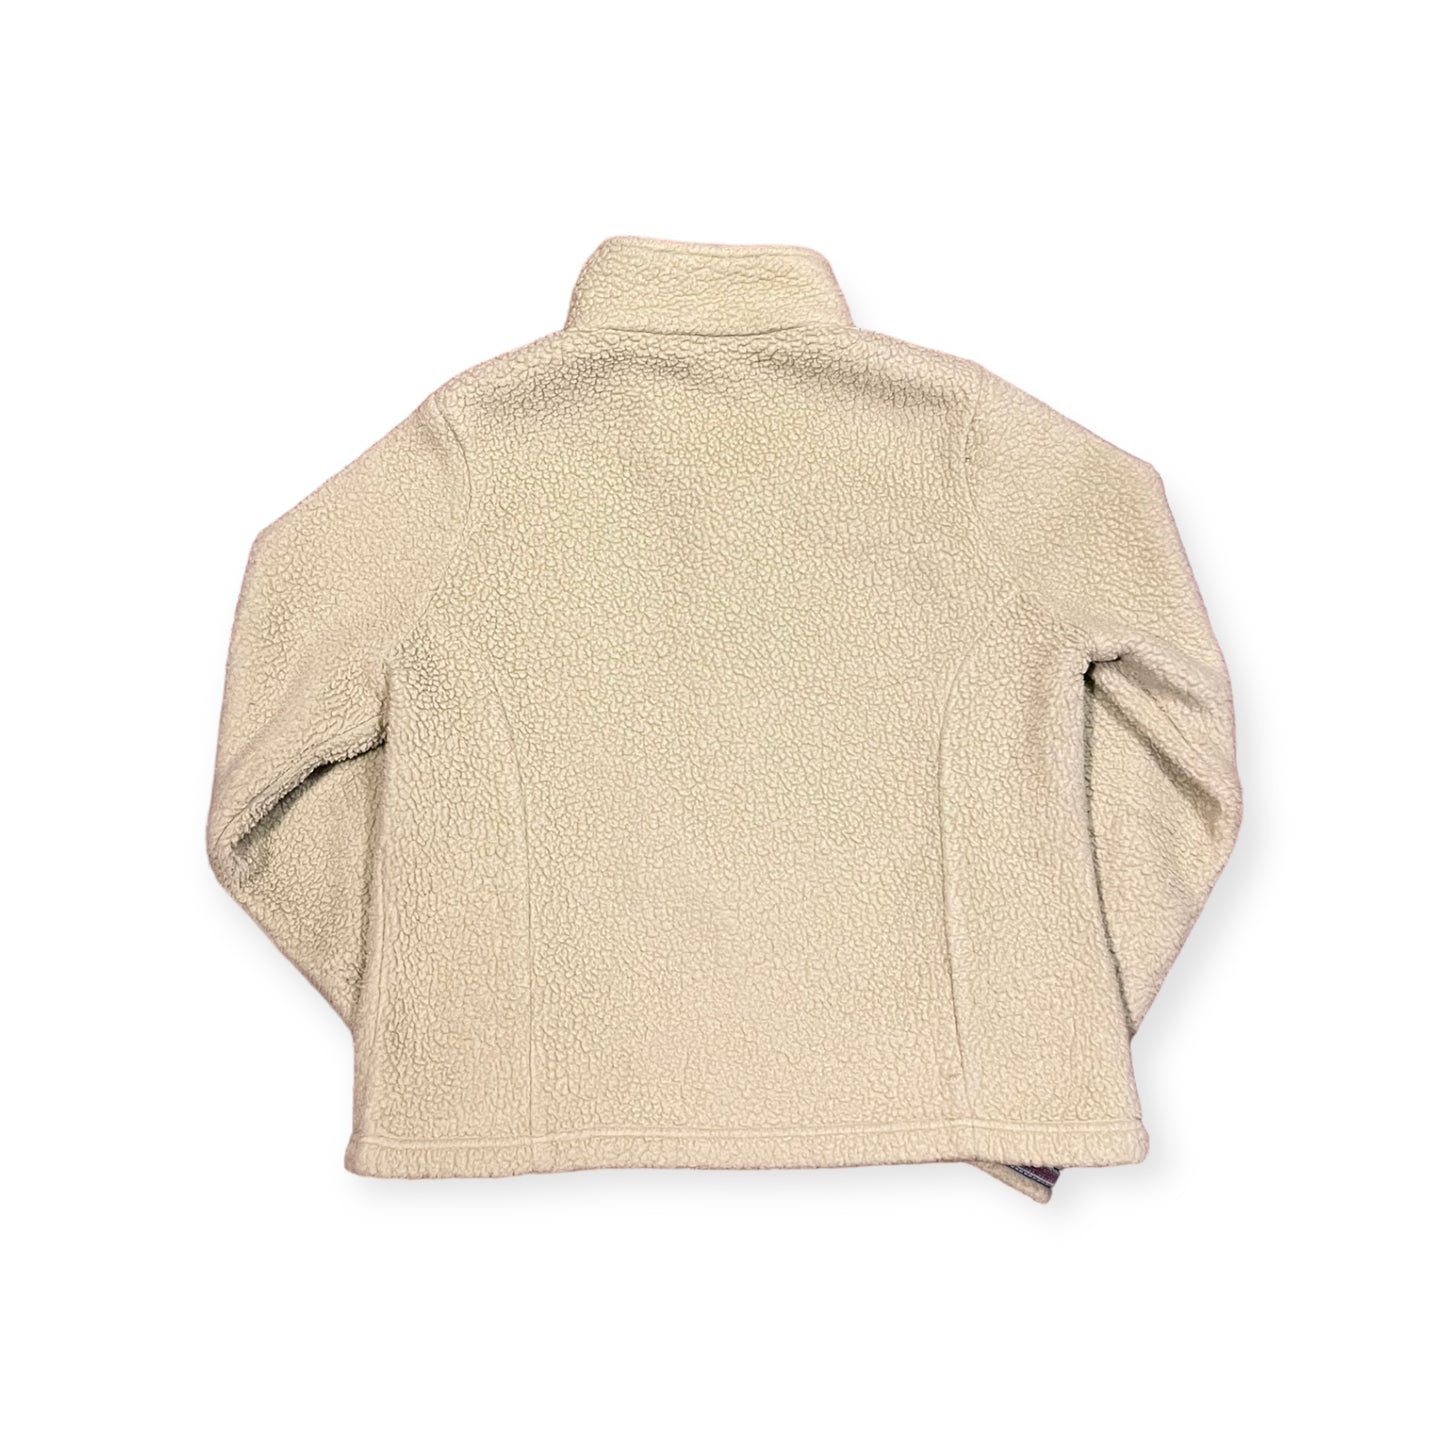 Vintage L.L. Bean Full-Zip Fleece Jacket - Medium